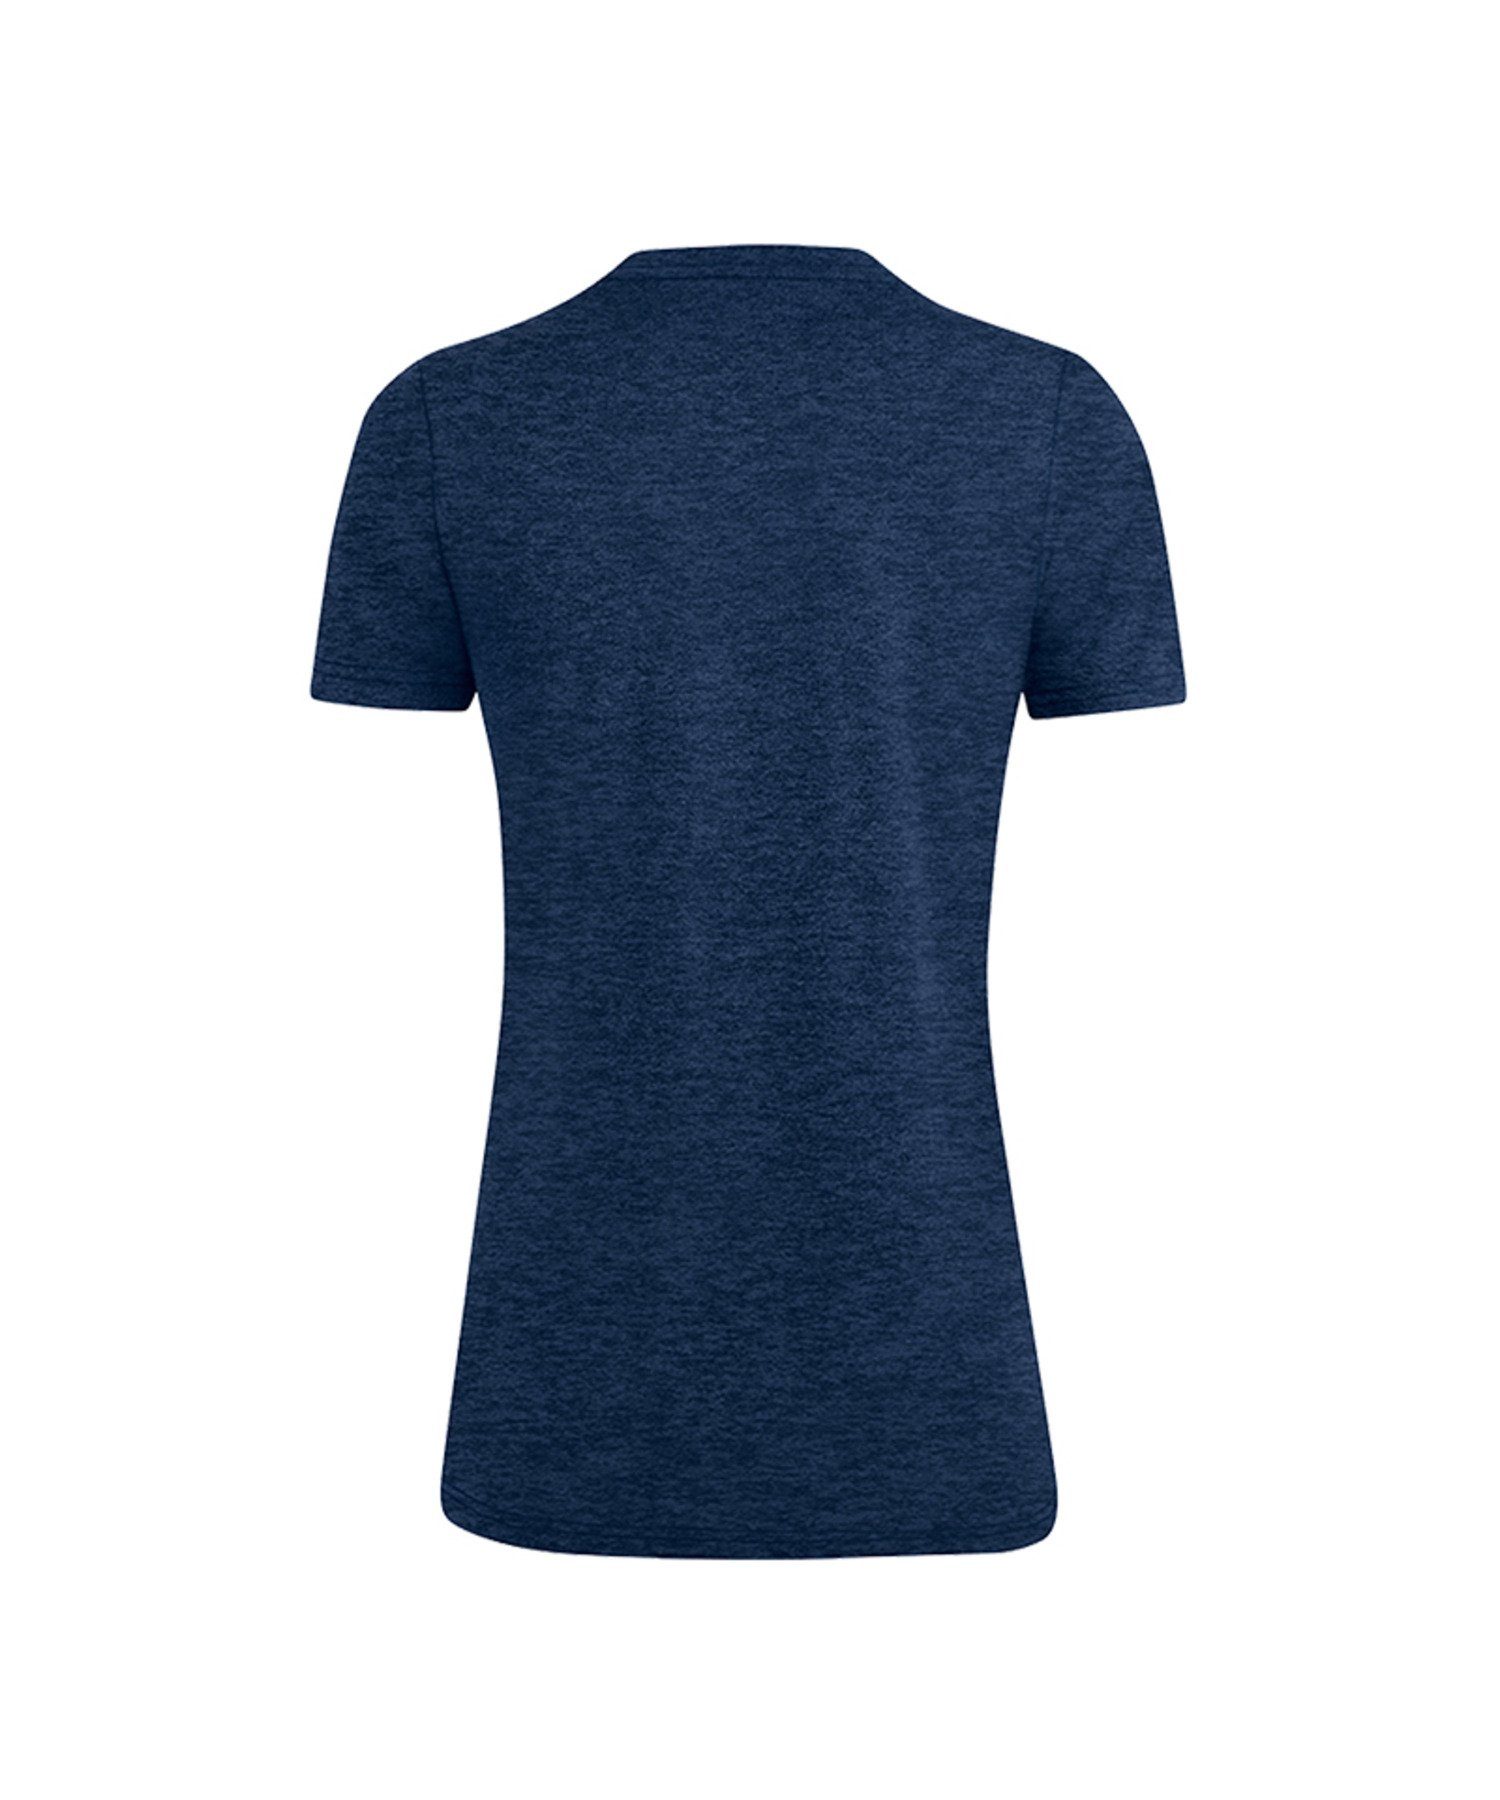 Jako T-Shirt T-Shirt Premium Blau Damen default Basic